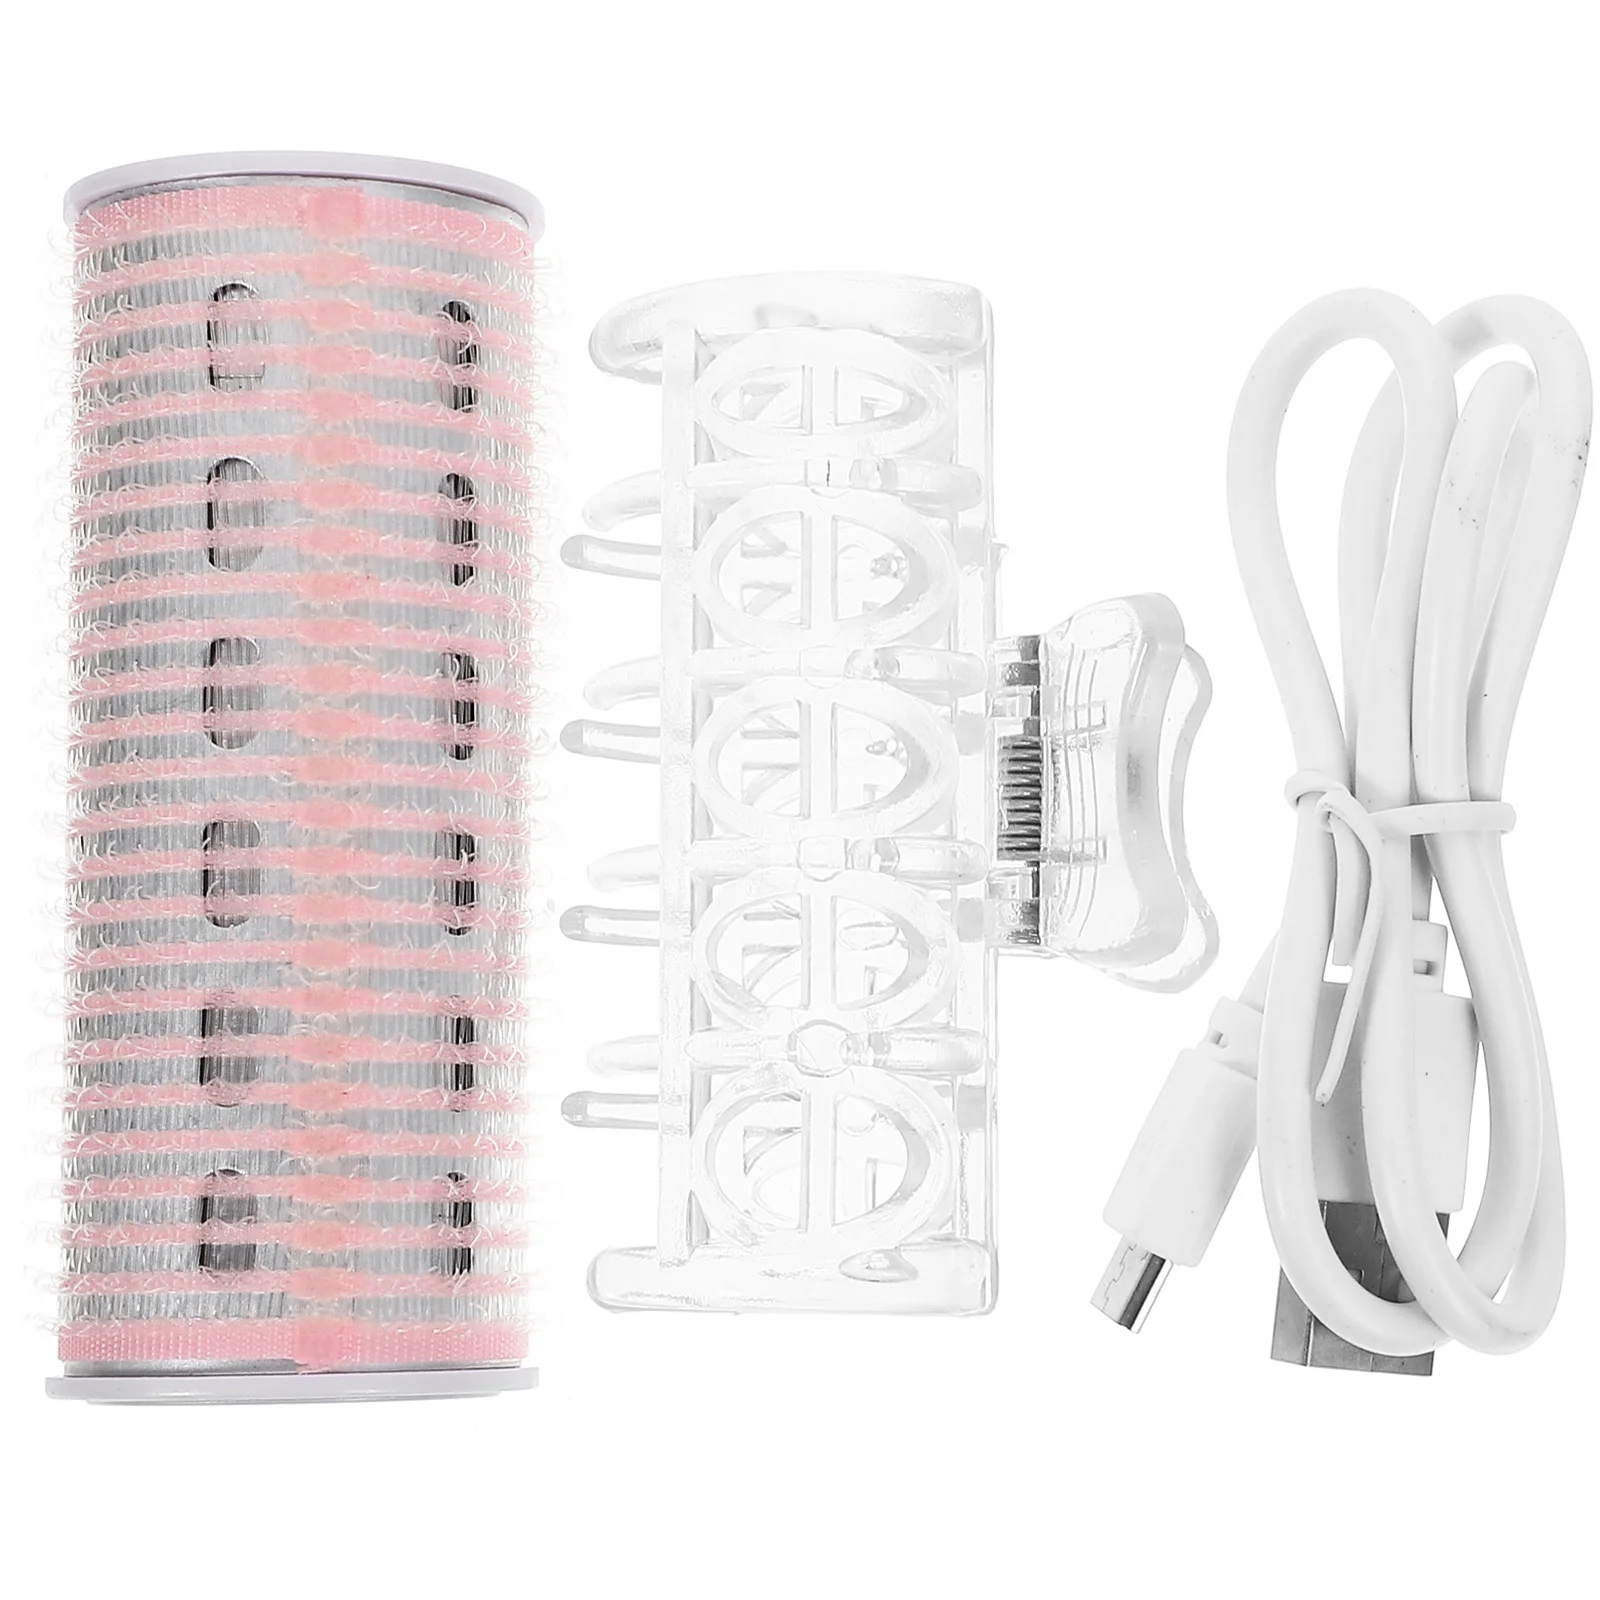 

Щипцы для завивки волос с подогревом, автоматические бигуди с USB-зарядкой, приспособления для укладки волос